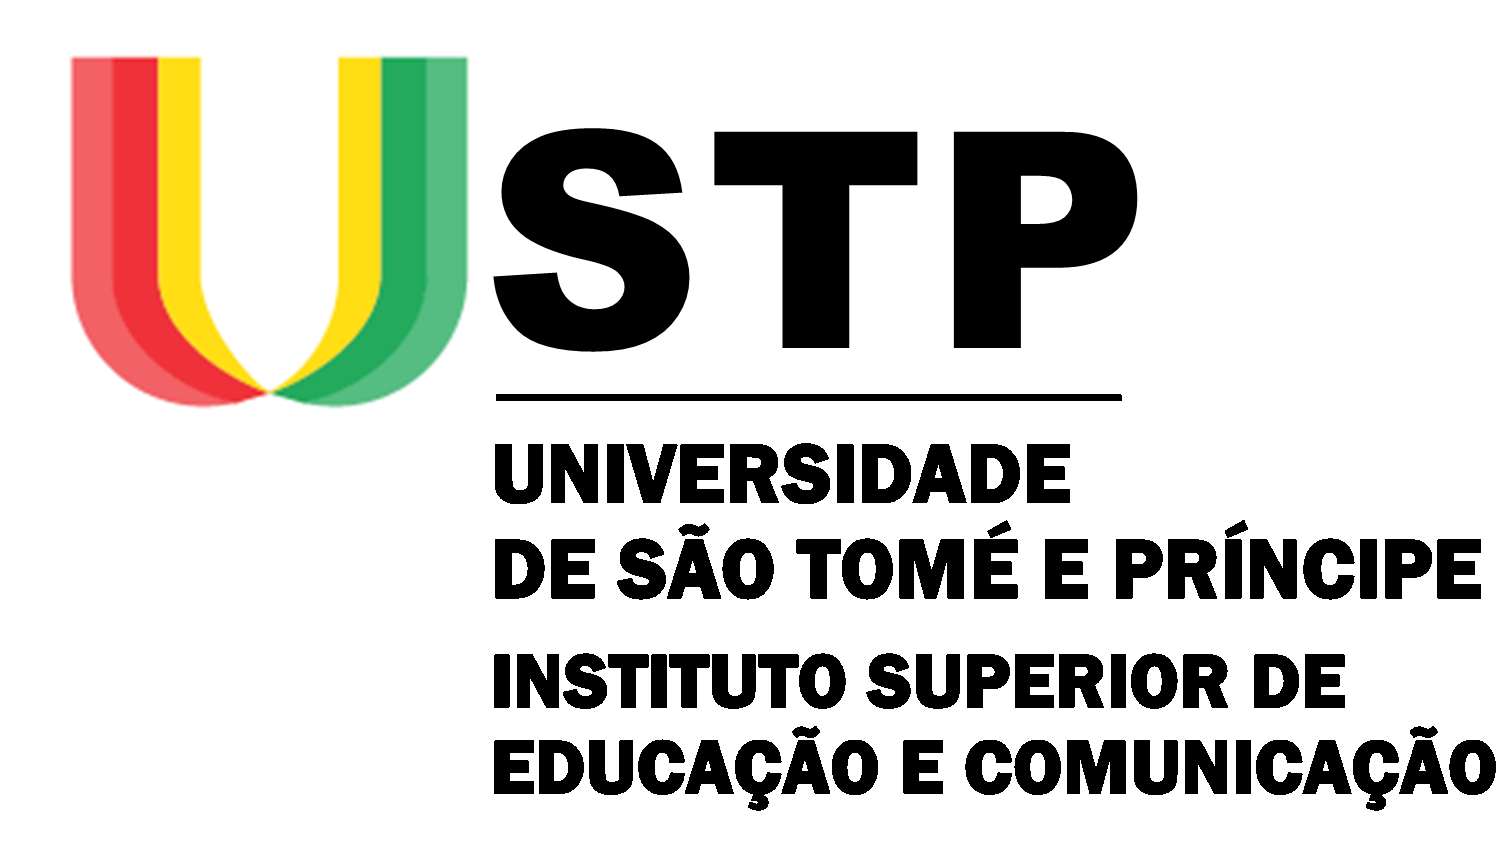 ISEC- INSTITUTO SUPERIOR DE EDUCAÇÃO E COMUNICAÇÃO - UNIVERSIDADE DE SÃO TOMÉ